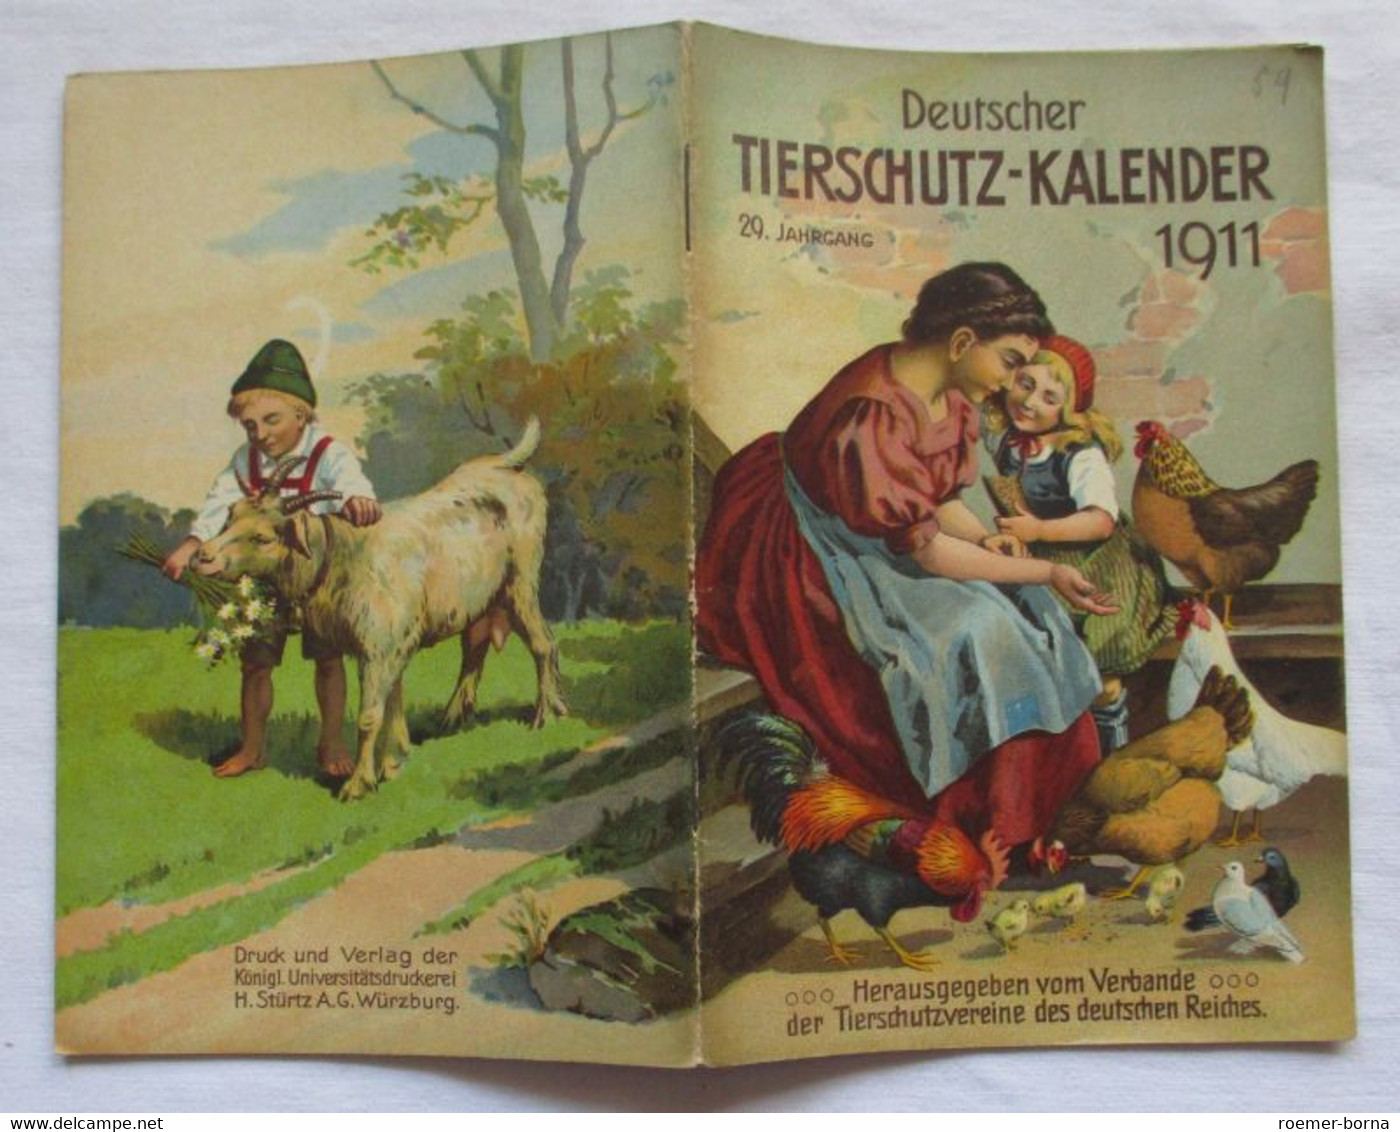 Deutscher Tierschutzkalender 1911 - 29. Jahrgang - Calendars